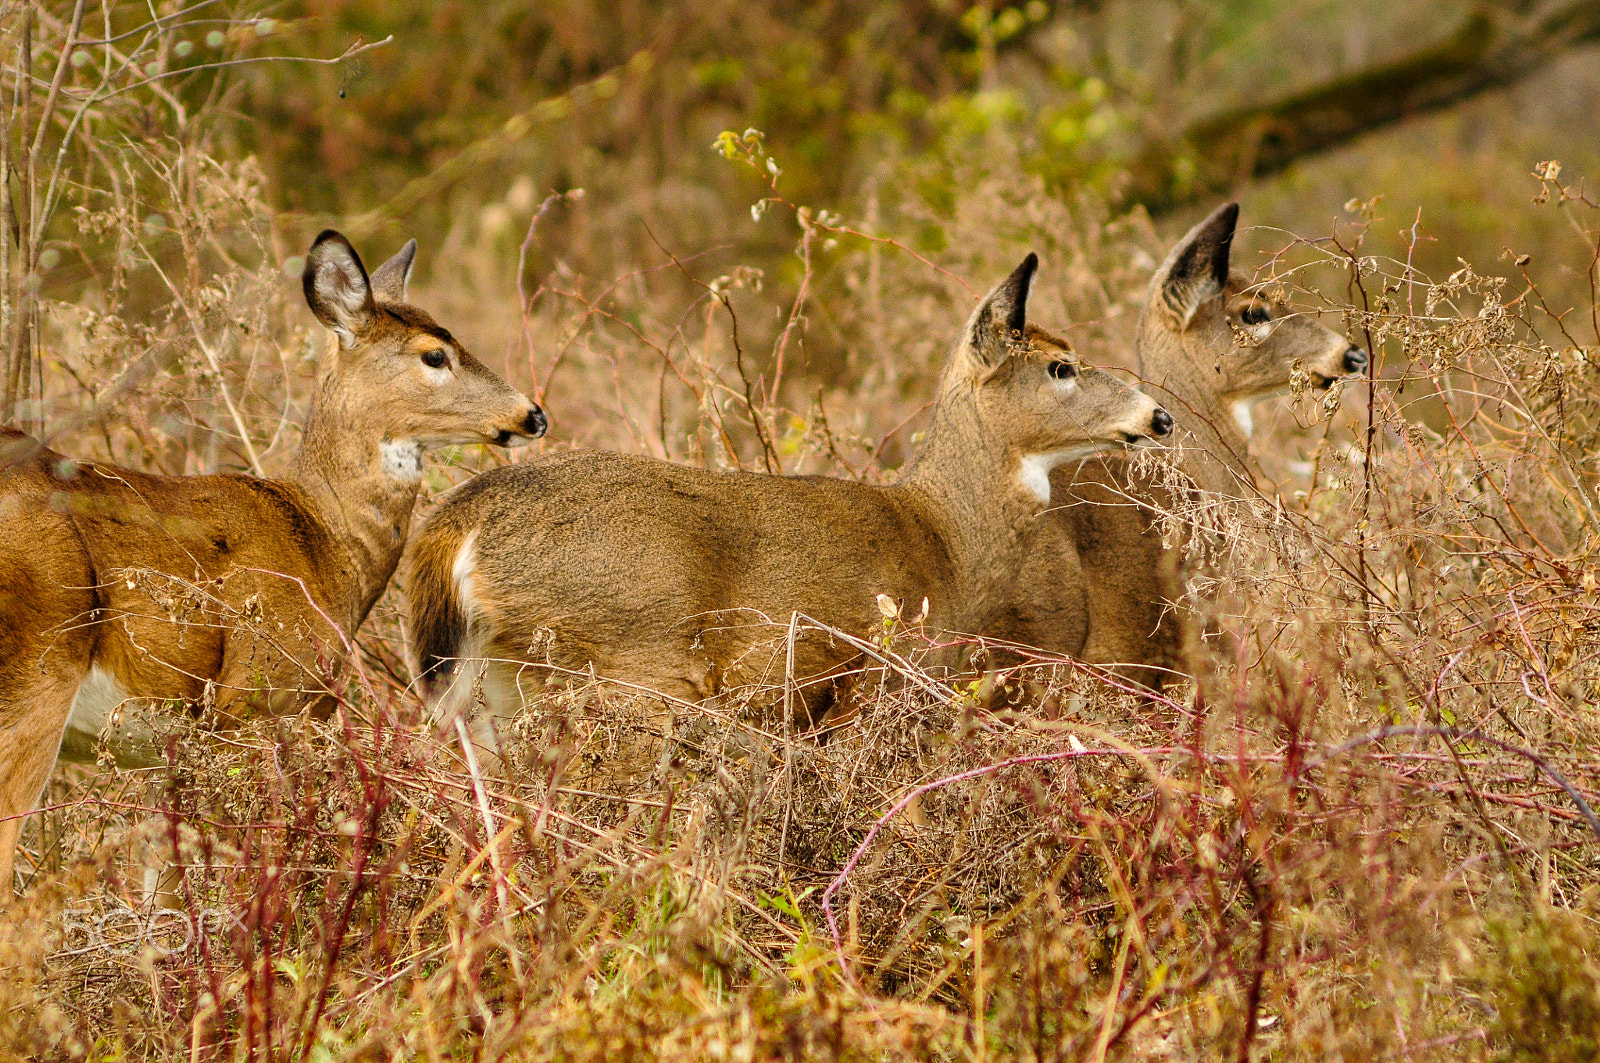 AF Zoom-Nikkor 75-300mm f/4.5-5.6 sample photo. Whitetail deer photography